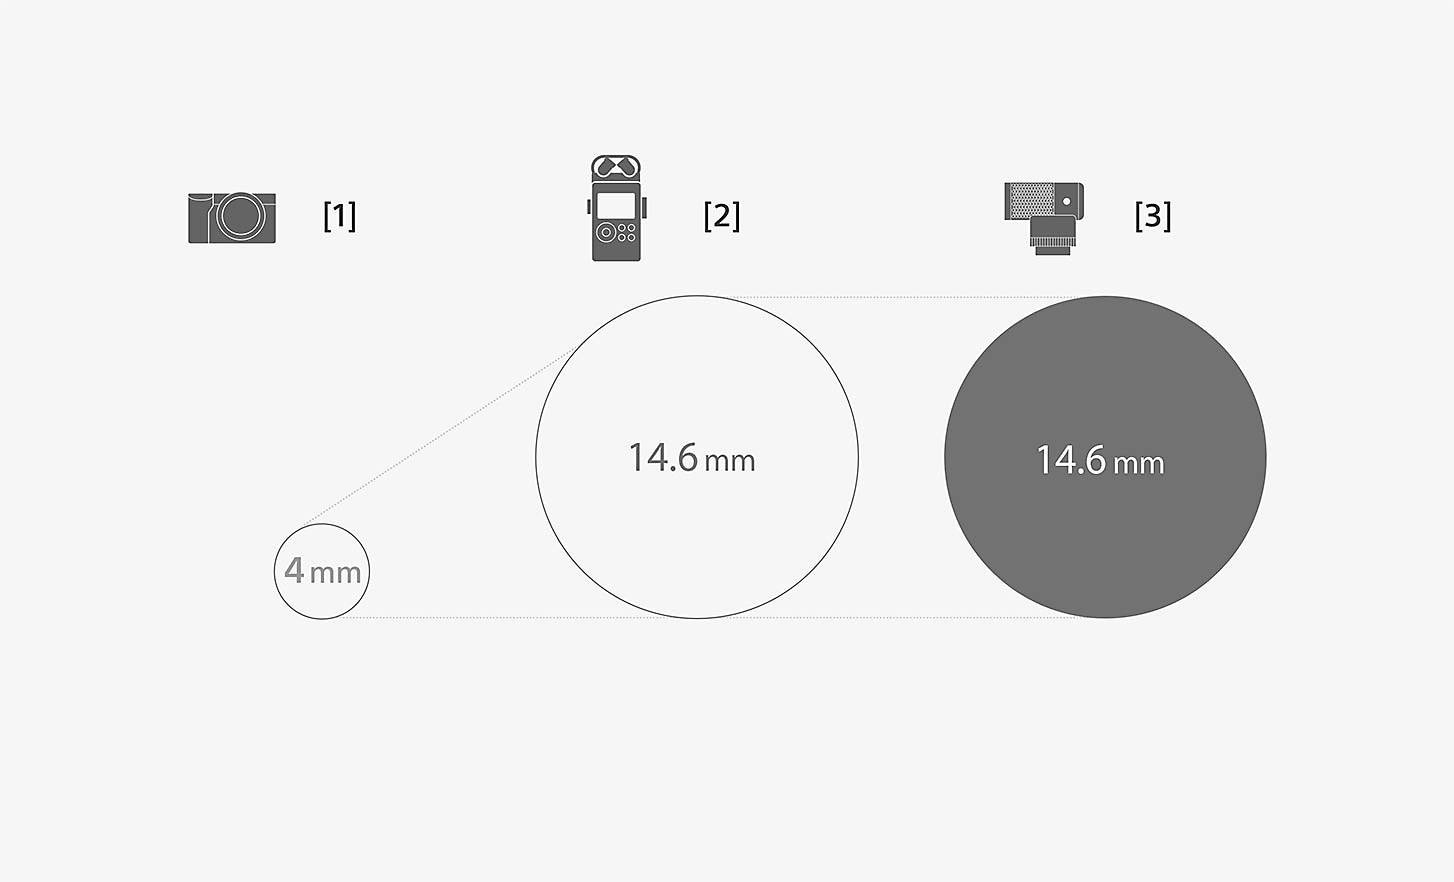 Illustration comparant les dimensions de la capsule du microphone ECM-G1 et celles d'un microphone intégré standard